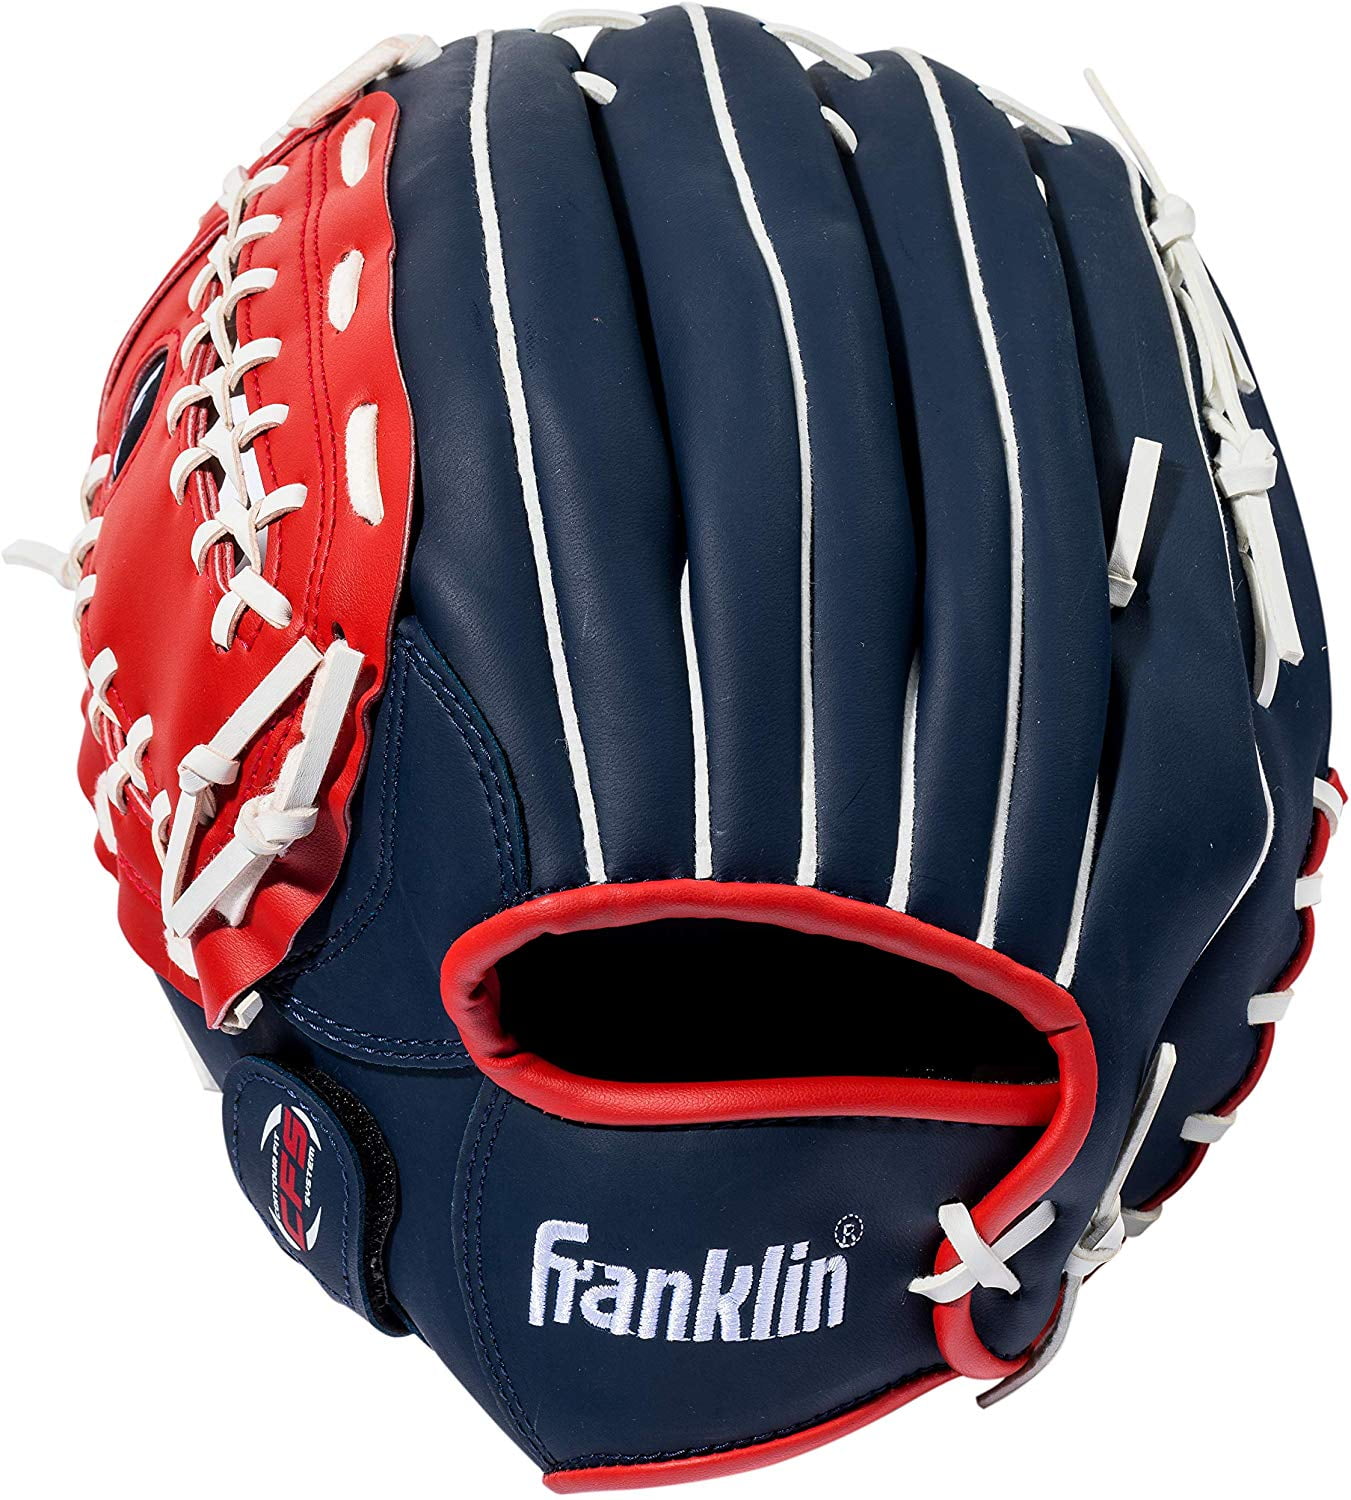 Franklin 12" Baseball Glove 